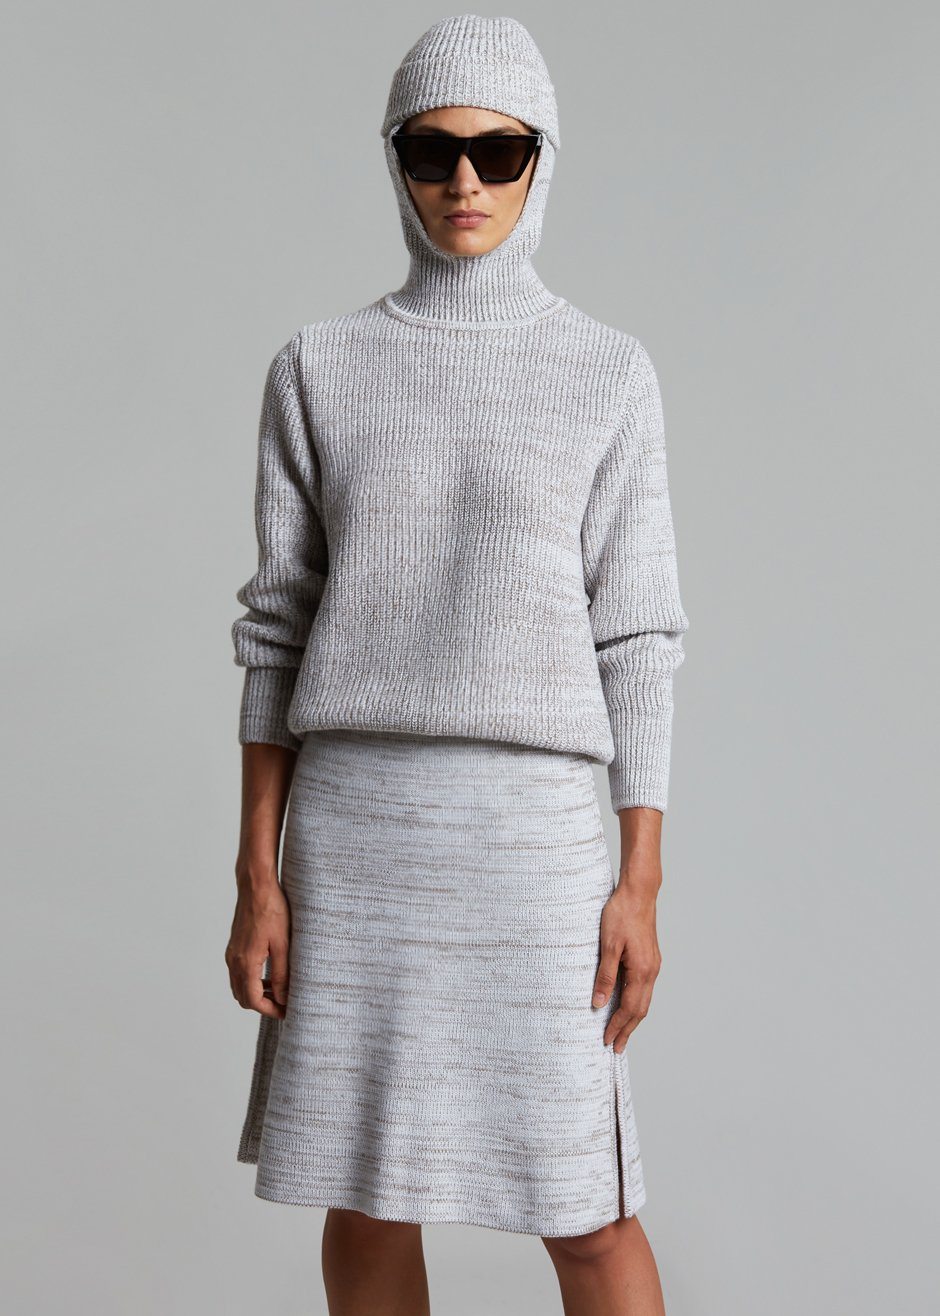 Bevza Knitted Skirt - Light Beige Melange - 1